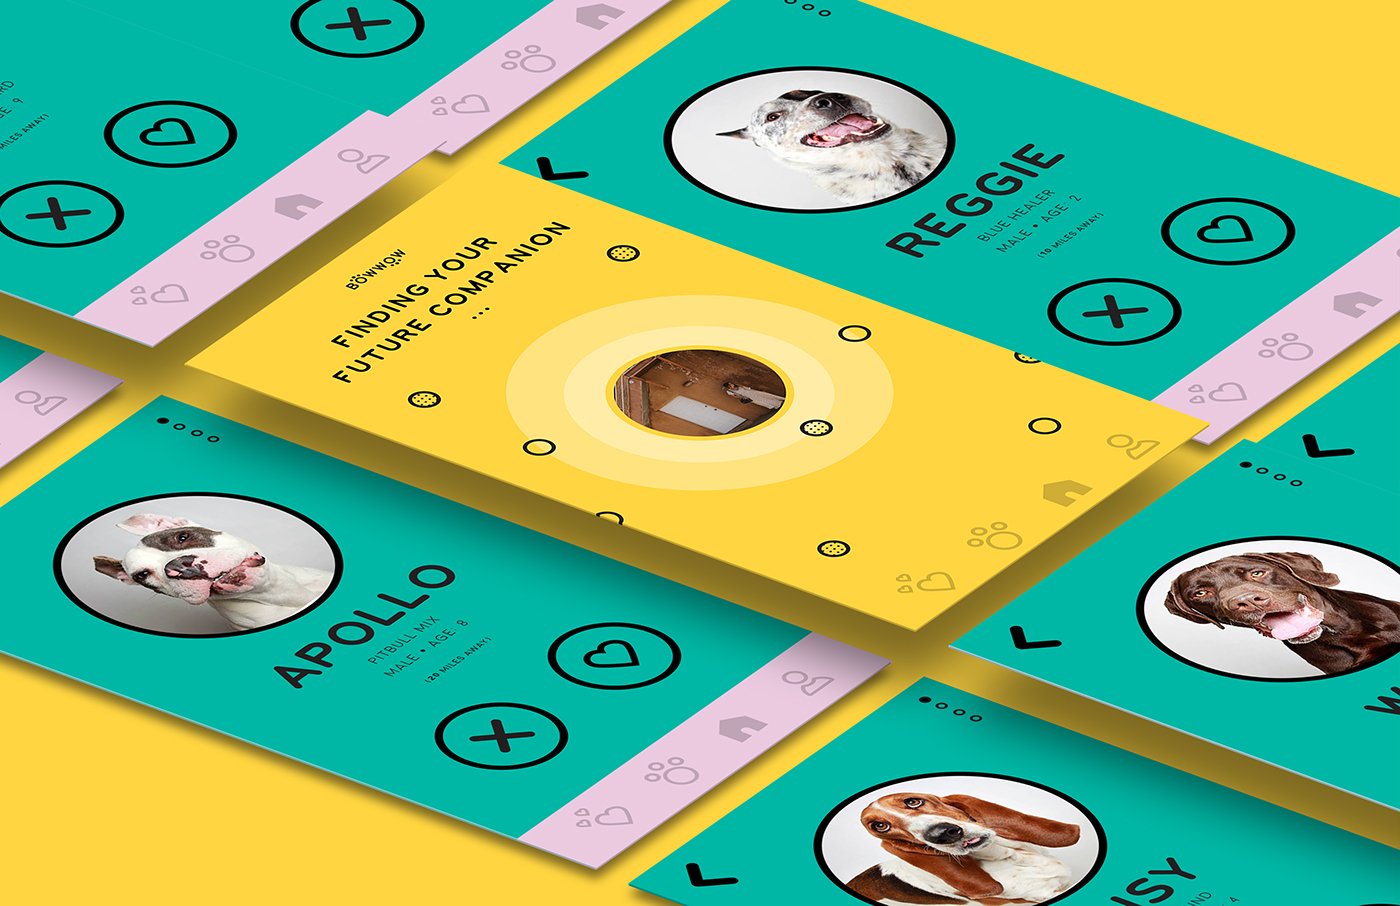 Design Week / 32: тіндер для собак, шрифти, органічний цукор